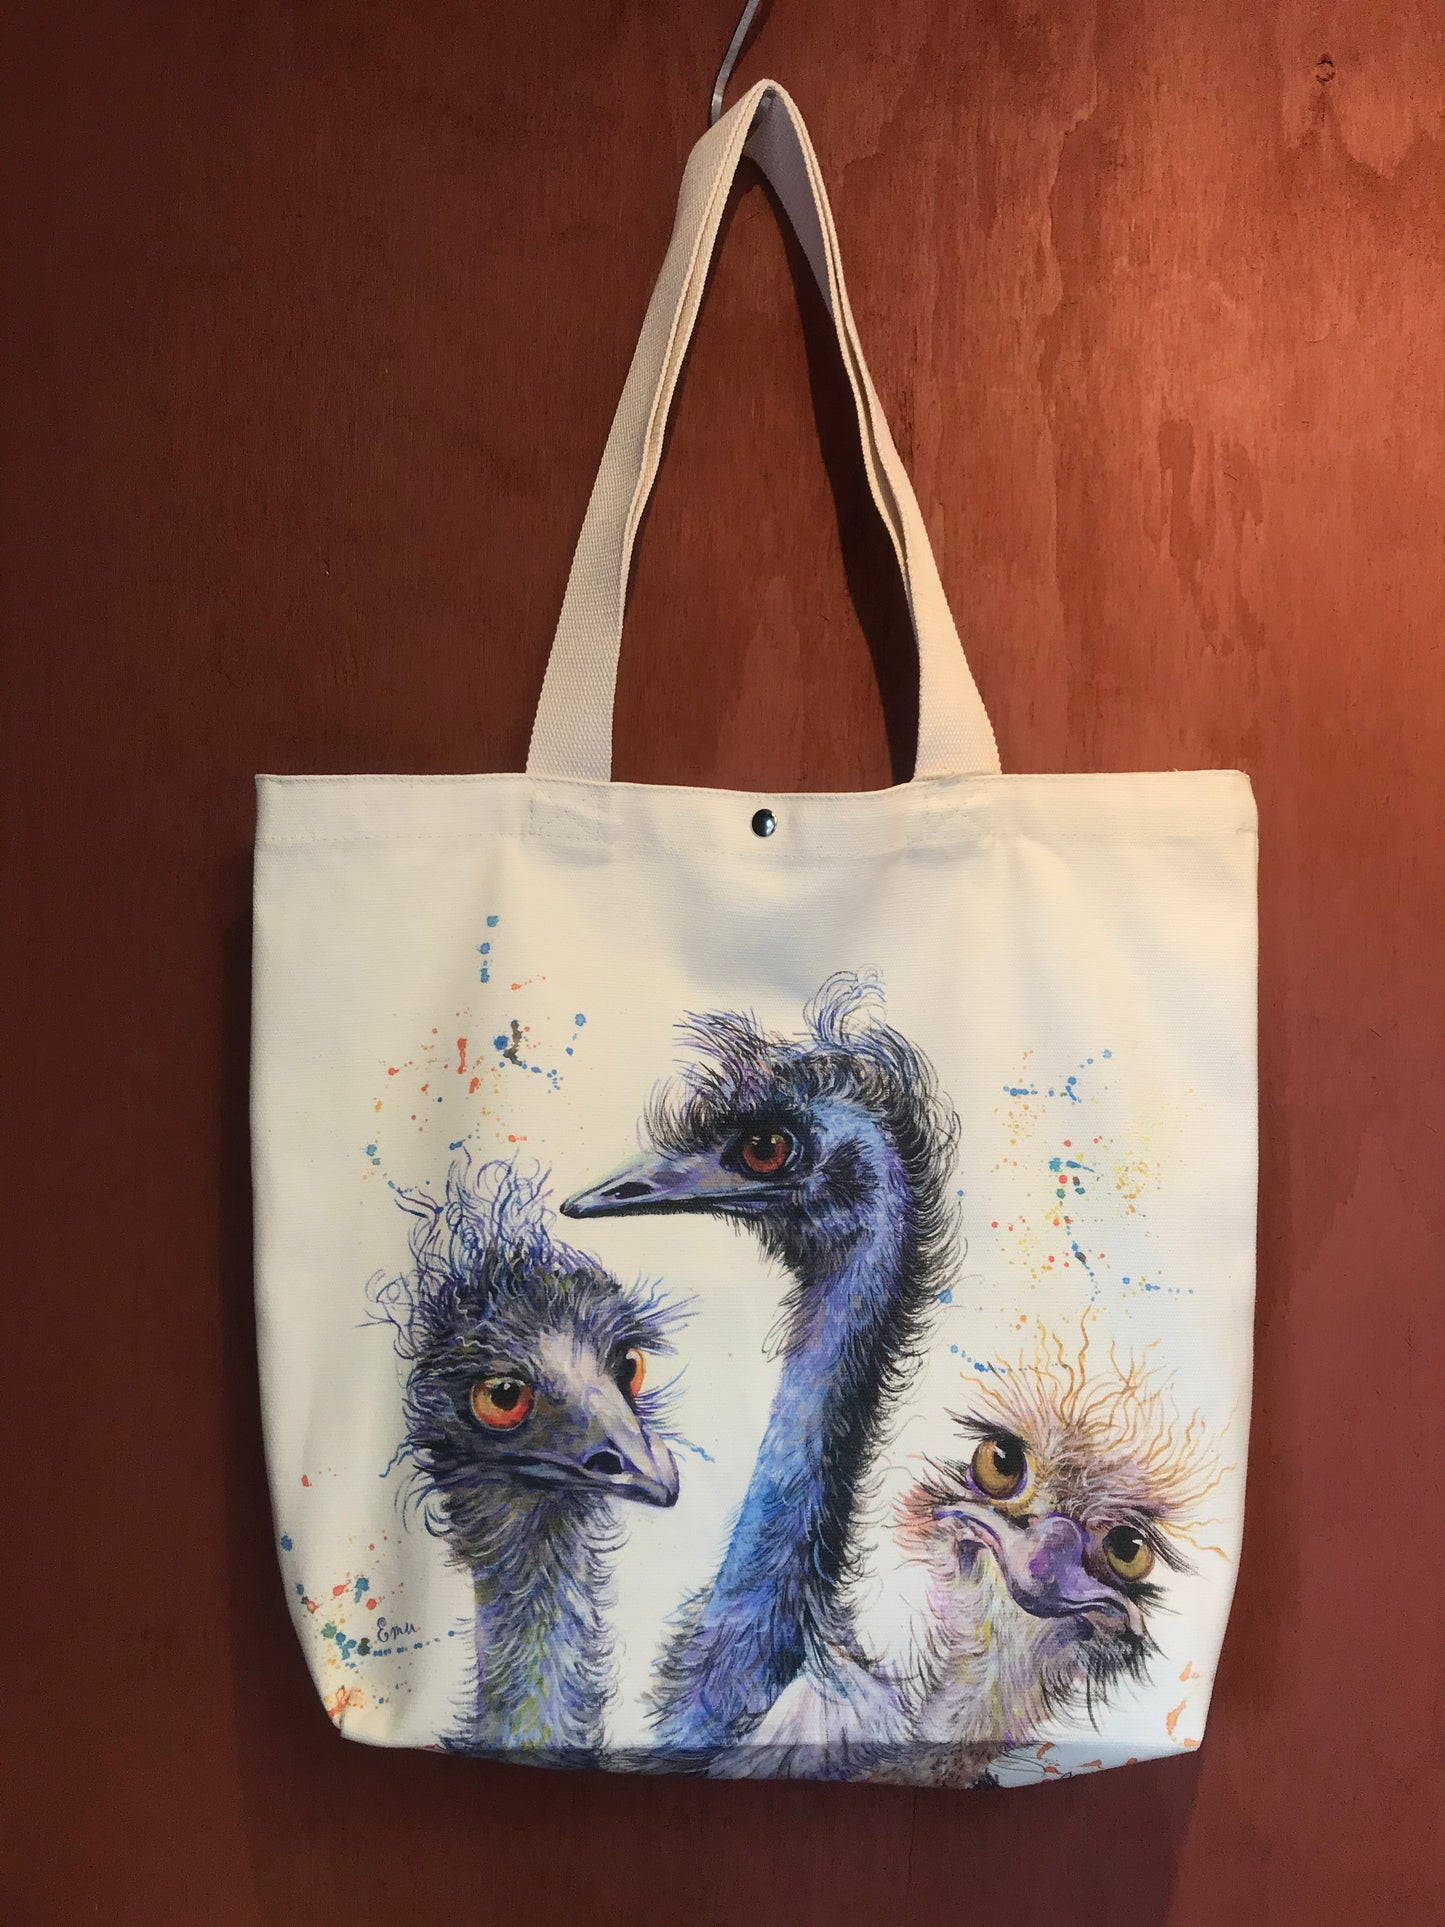 Emu family Tote Bag,Art bag,Christmas Gift, Australian animal,